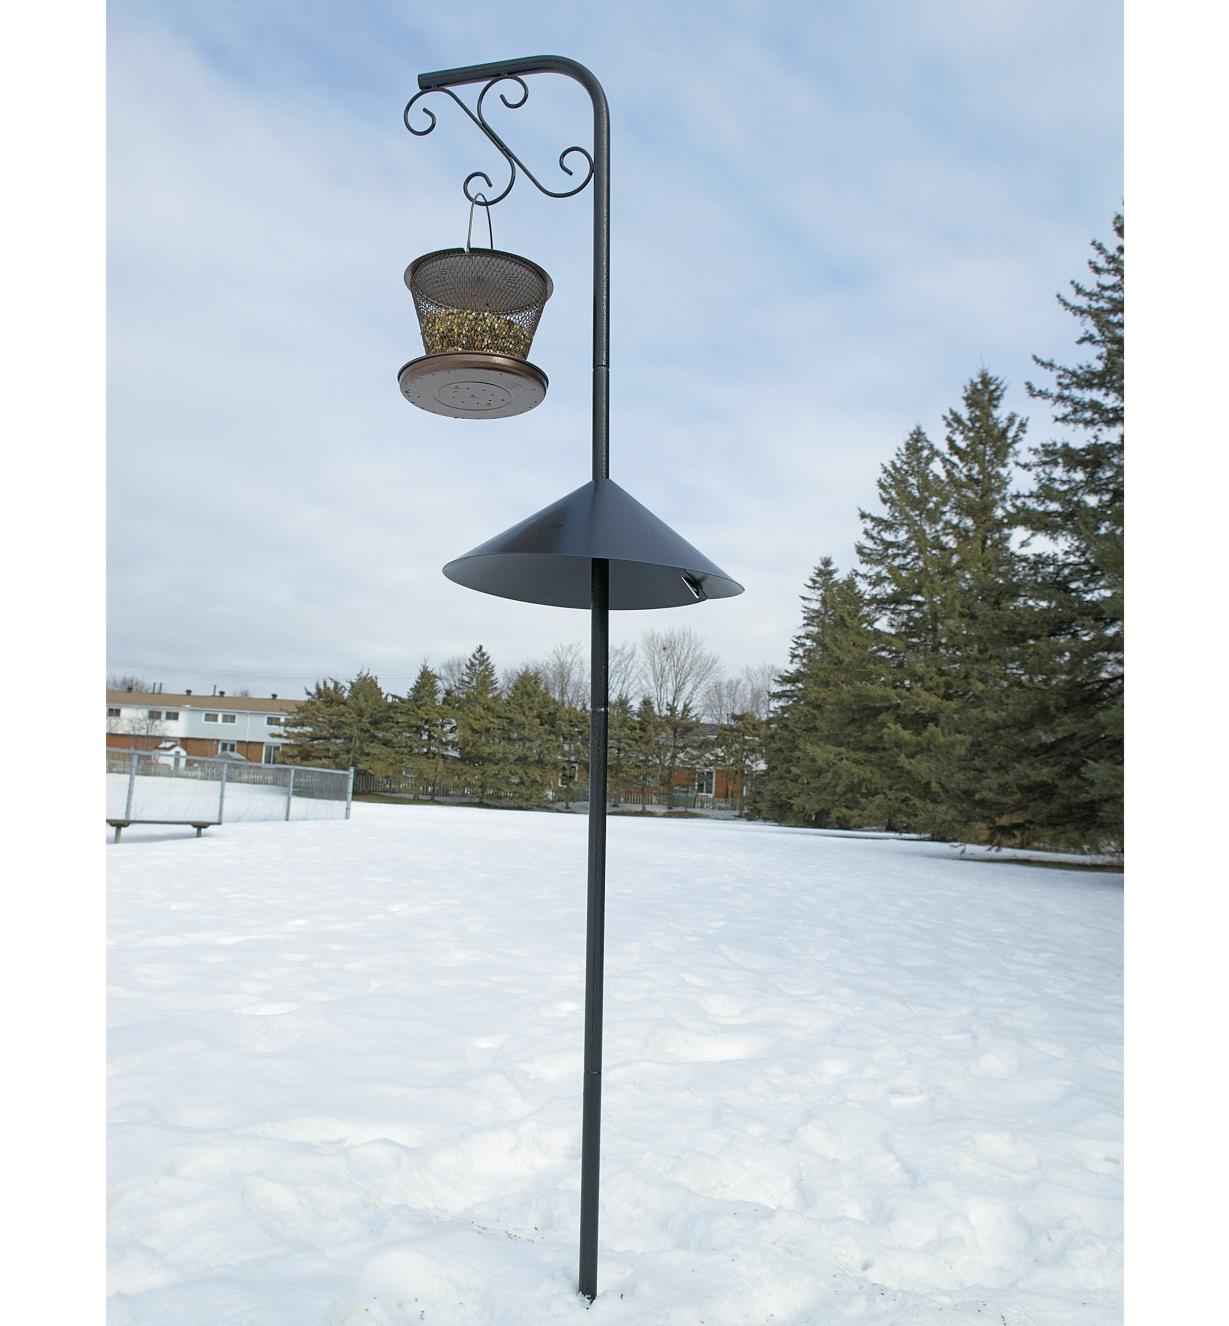 Wrap-Around Squirrel Baffle mounted on a garden hanger holding a bird feeder in winter